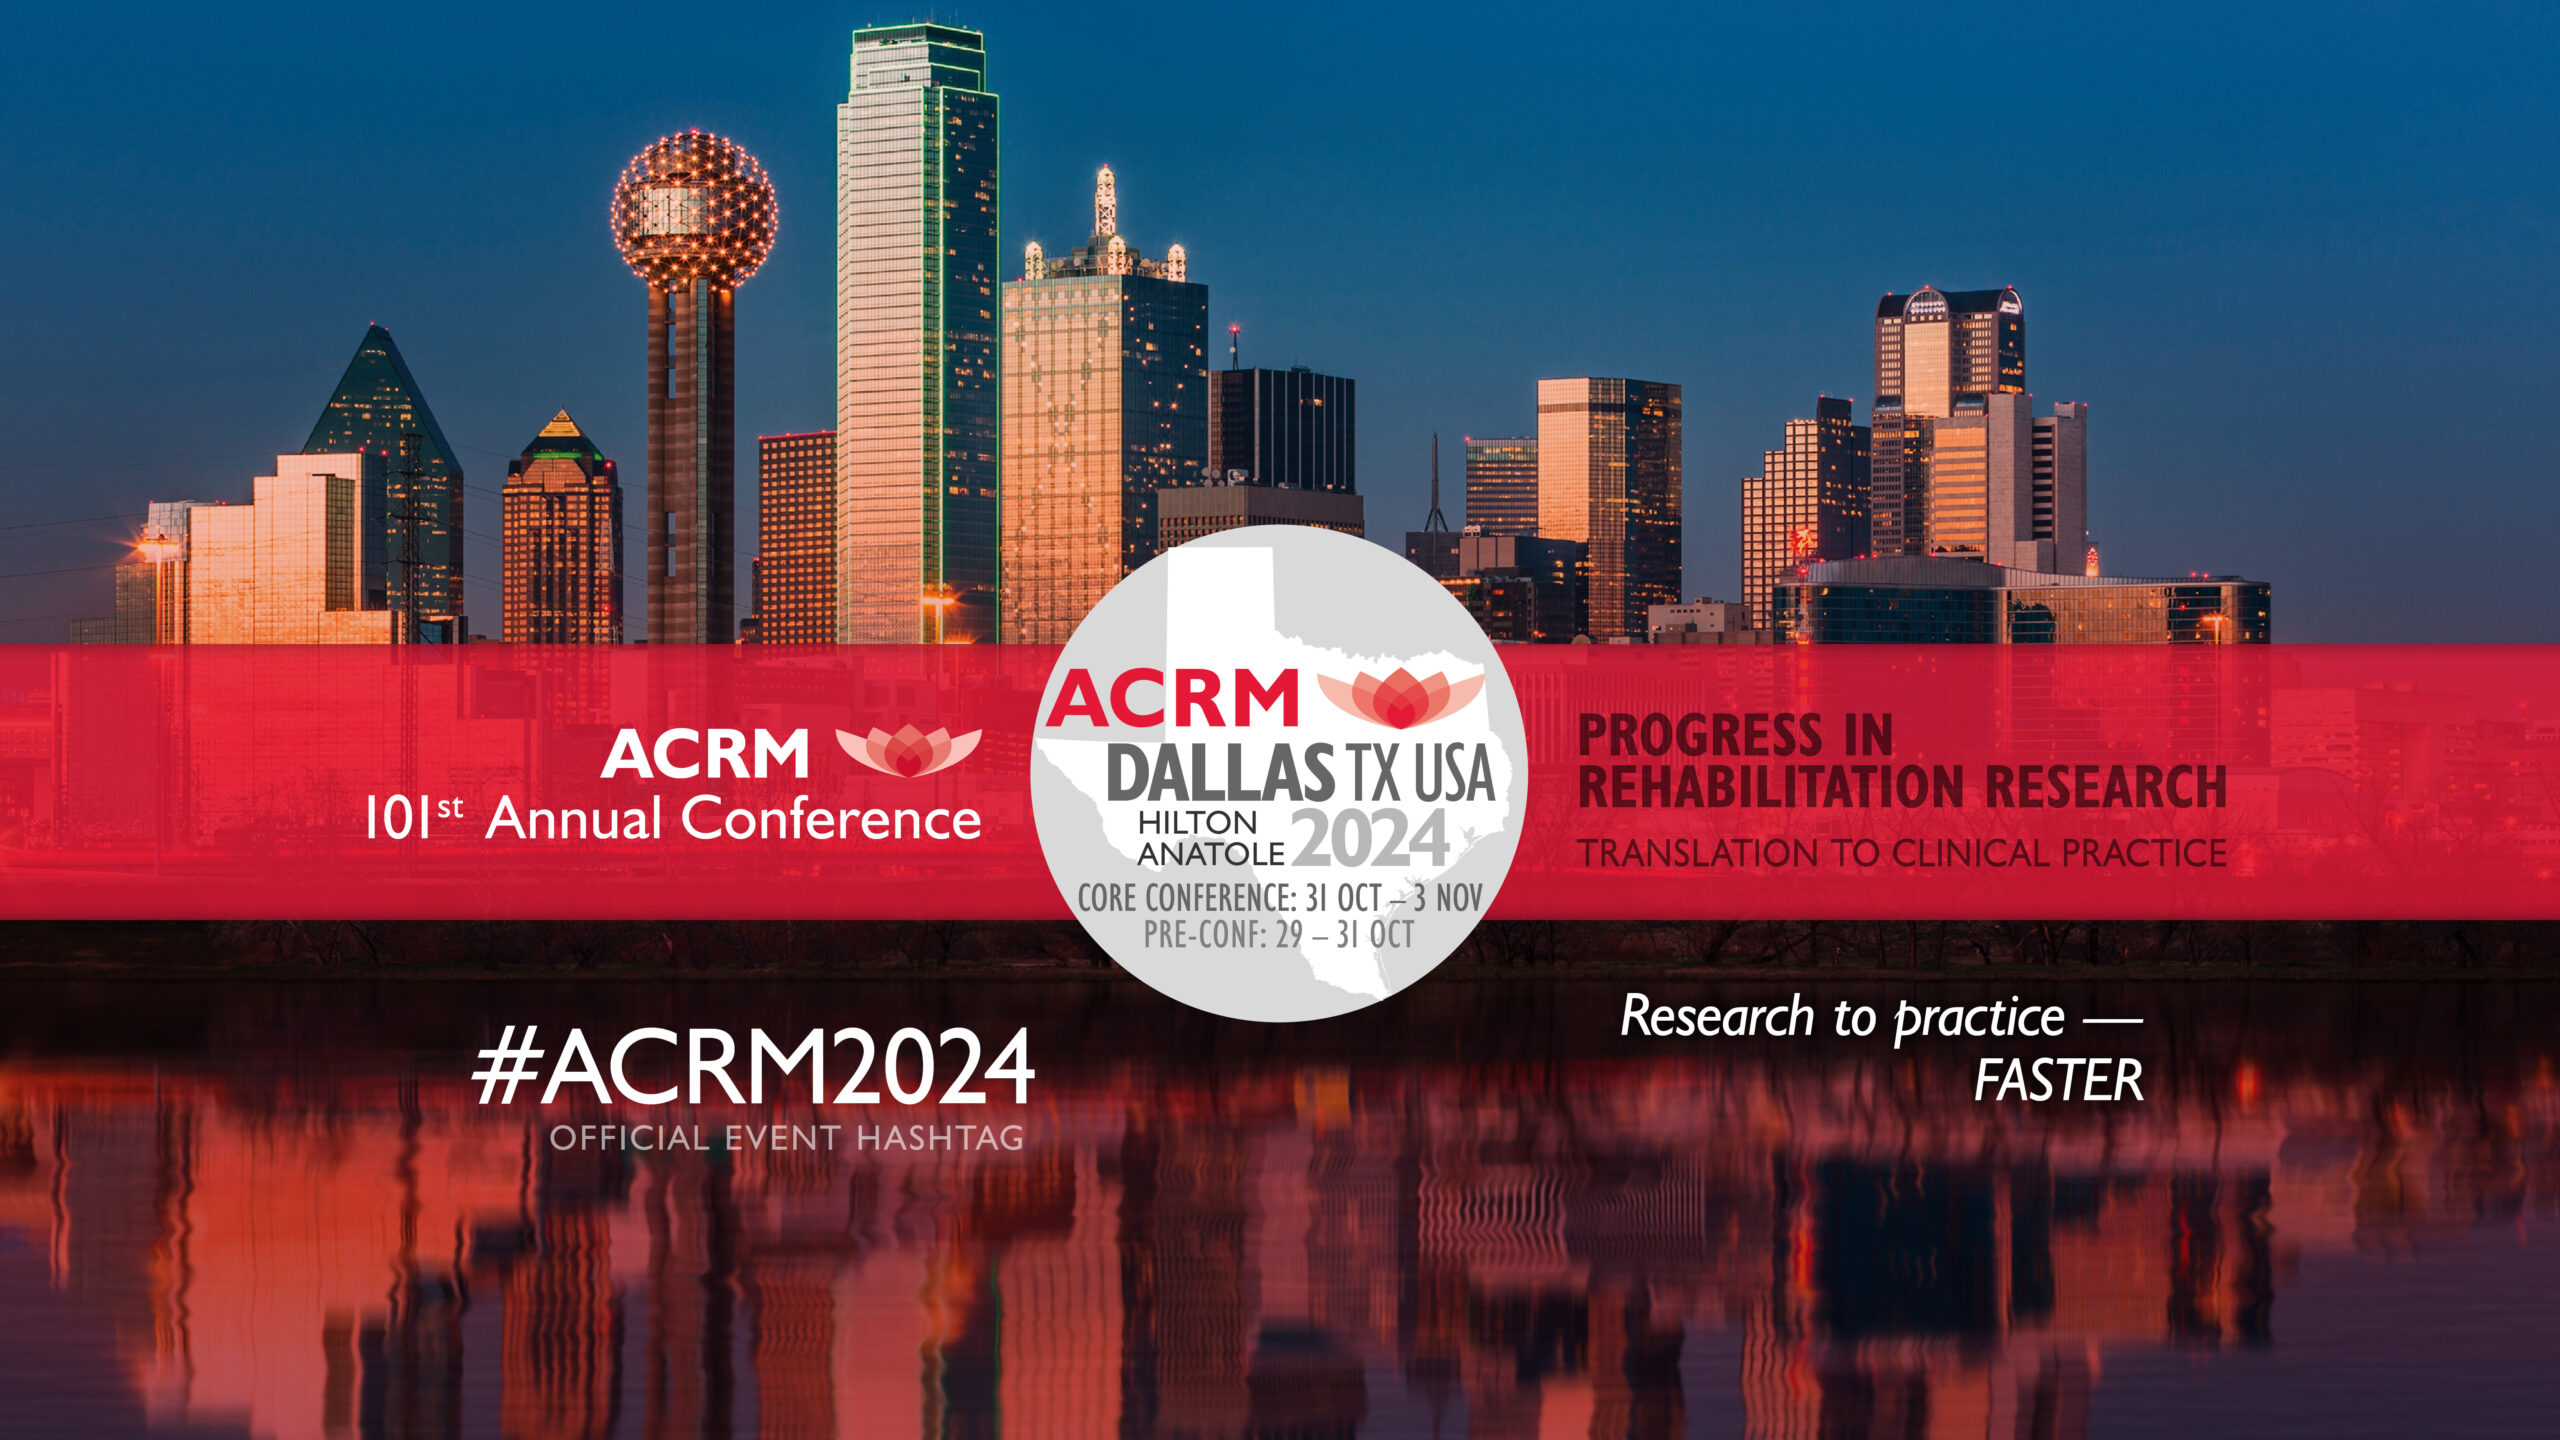 ACRM 101st Annual Conference DALLAS #ACRM2024